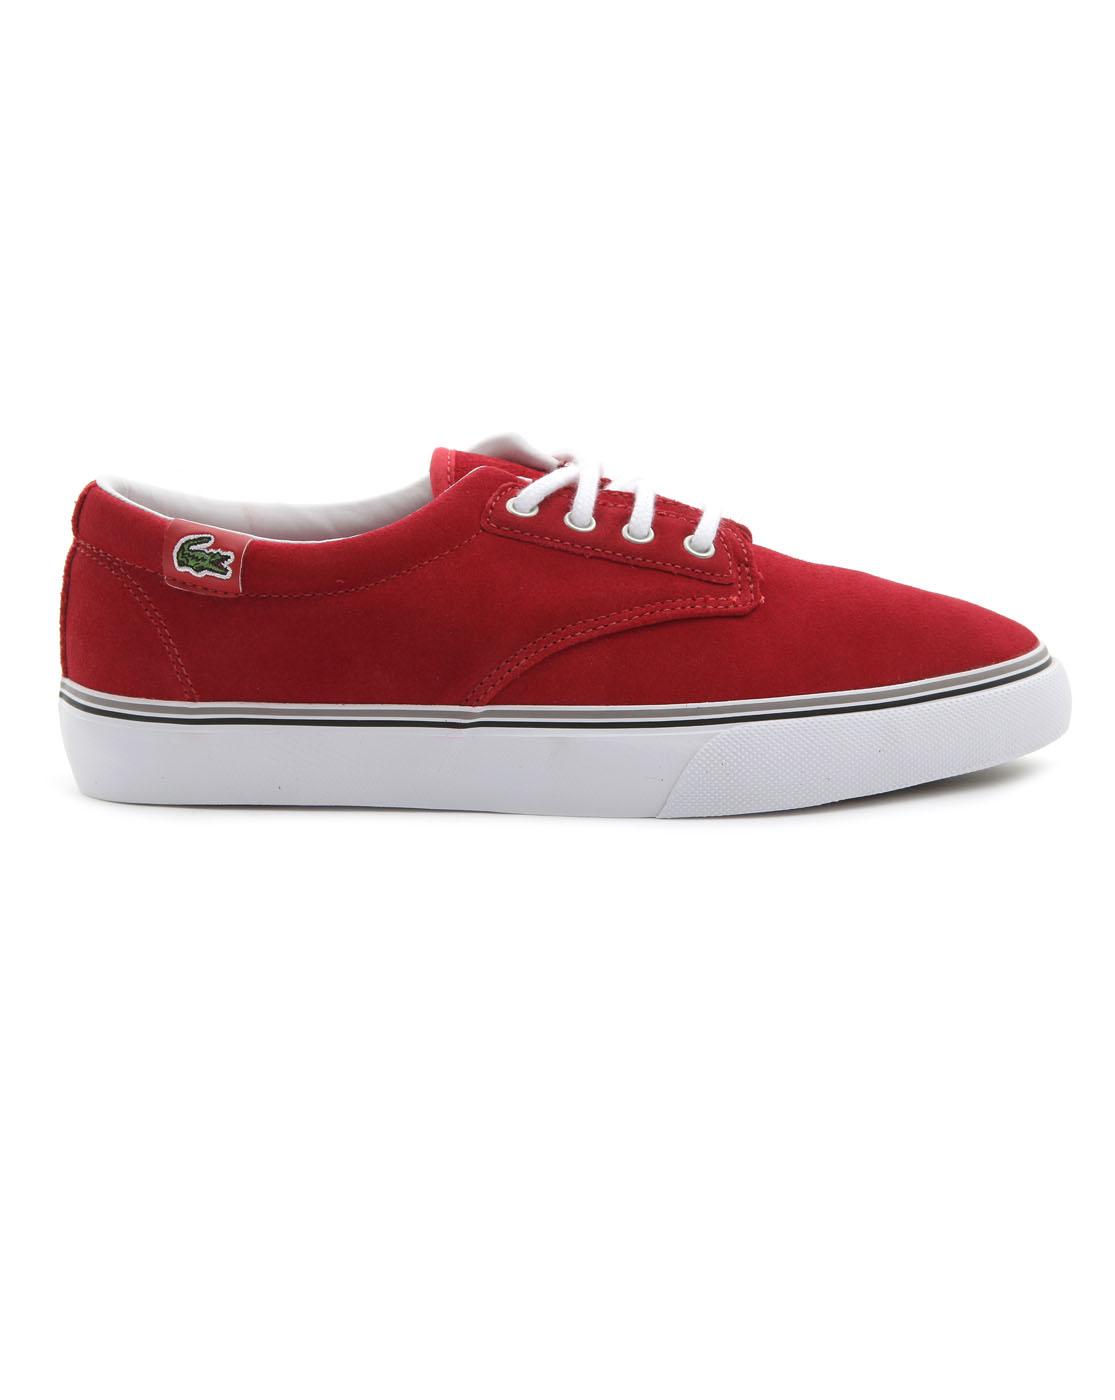 Foto Zapatos rojos Barbados